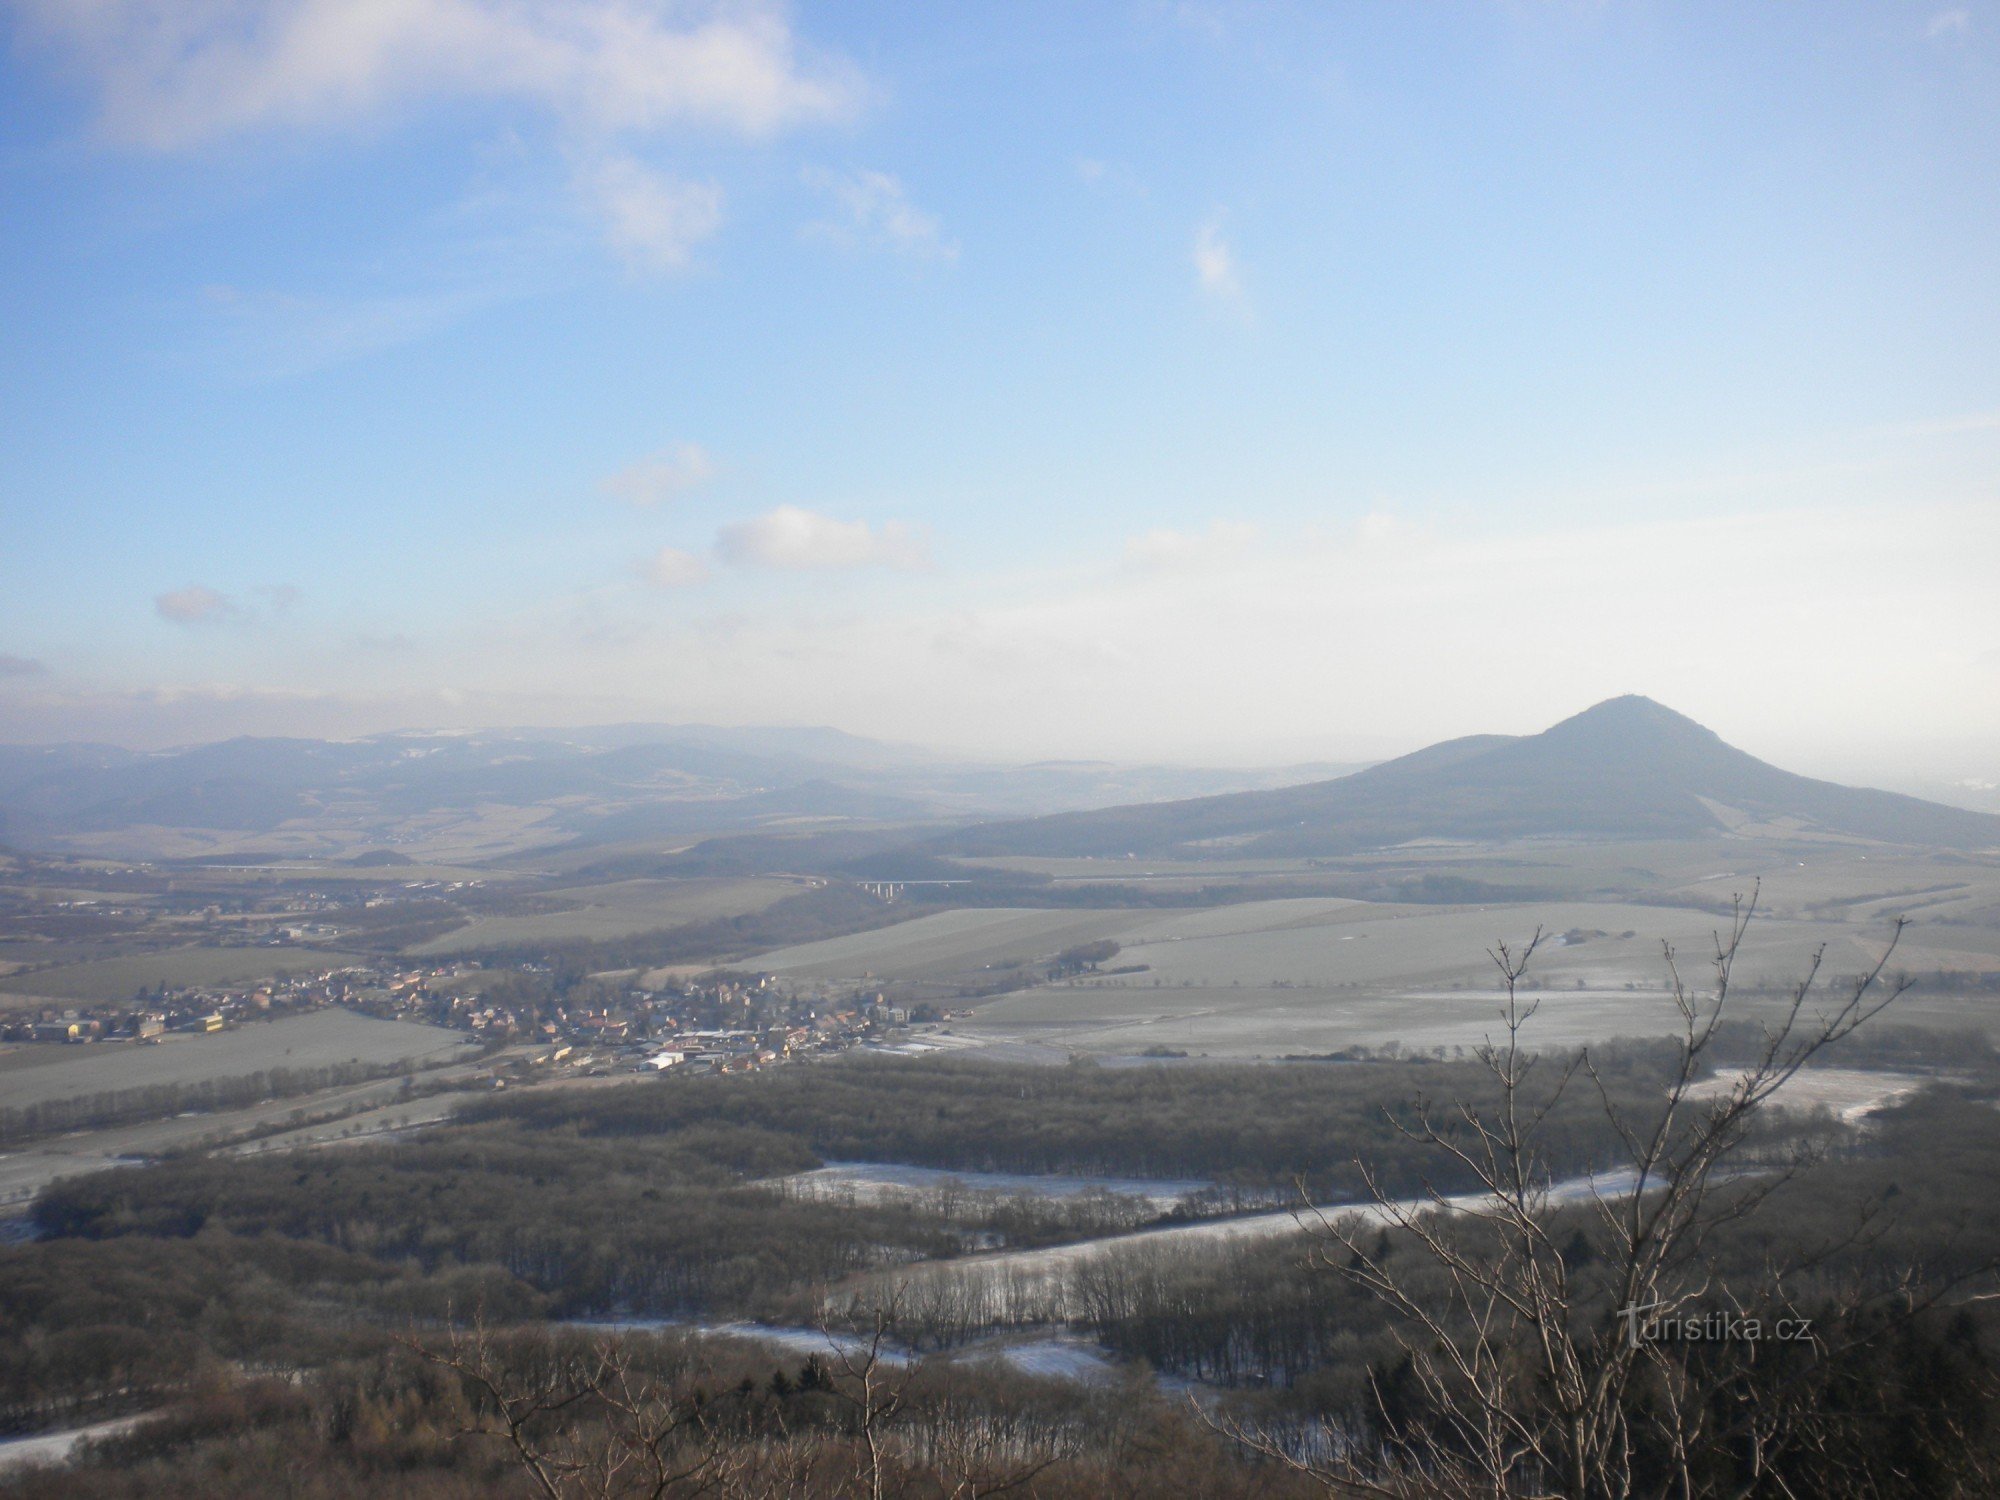 Pogled na regiju s dvorca Ostrý prema istoku. Brdo Lovoš u prvom planu.